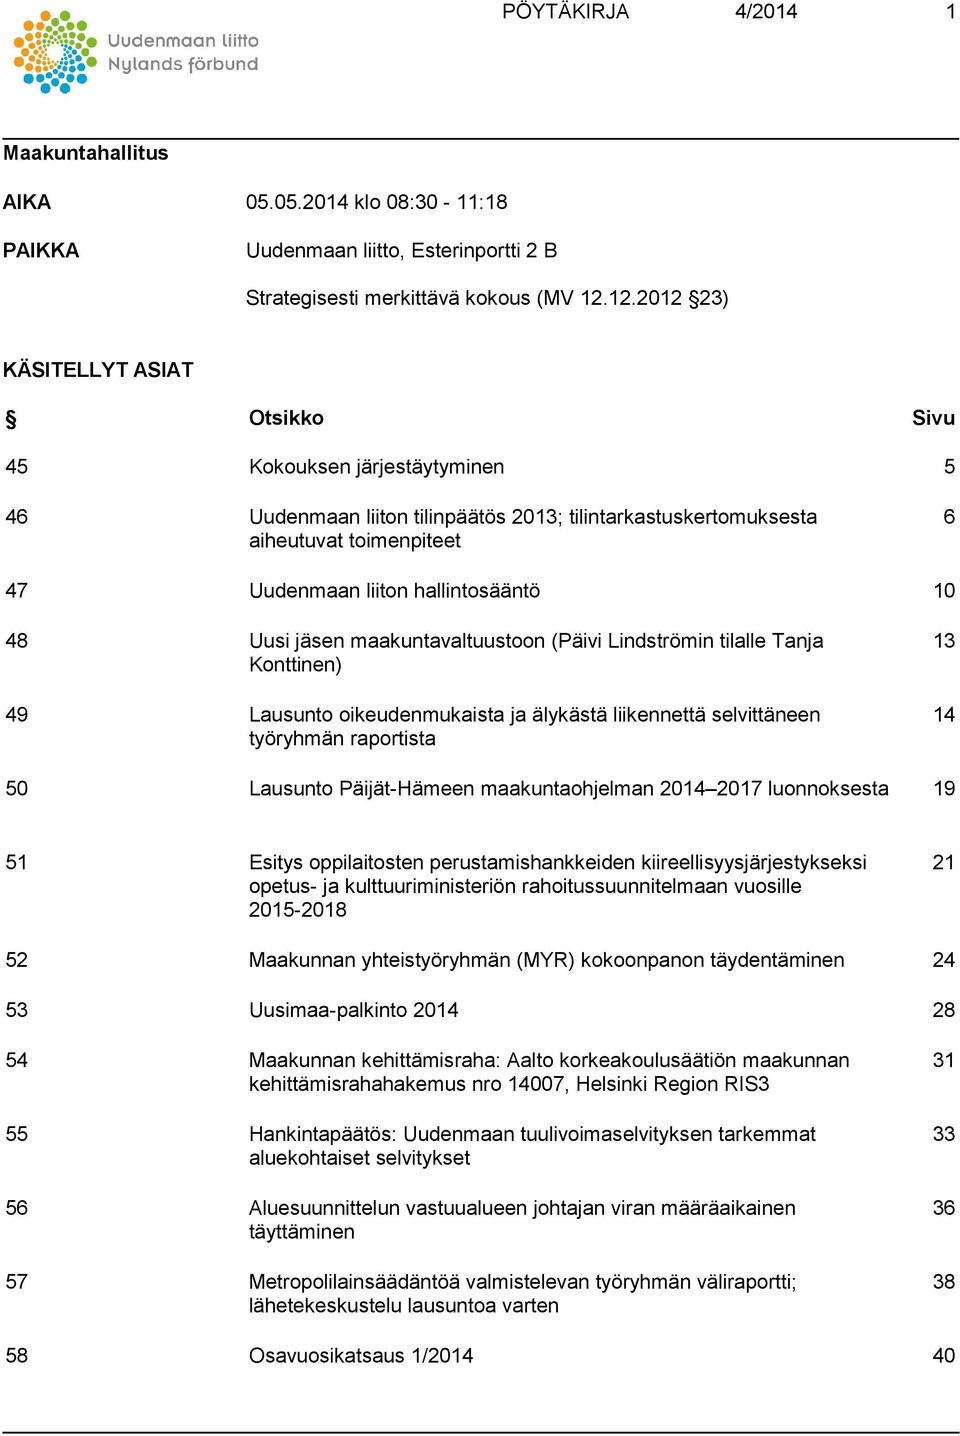 hallintosääntö 10 48 Uusi jäsen maakuntavaltuustoon (Päivi Lindströmin tilalle Tanja Konttinen) 49 Lausunto oikeudenmukaista ja älykästä liikennettä selvittäneen työryhmän raportista 13 14 50